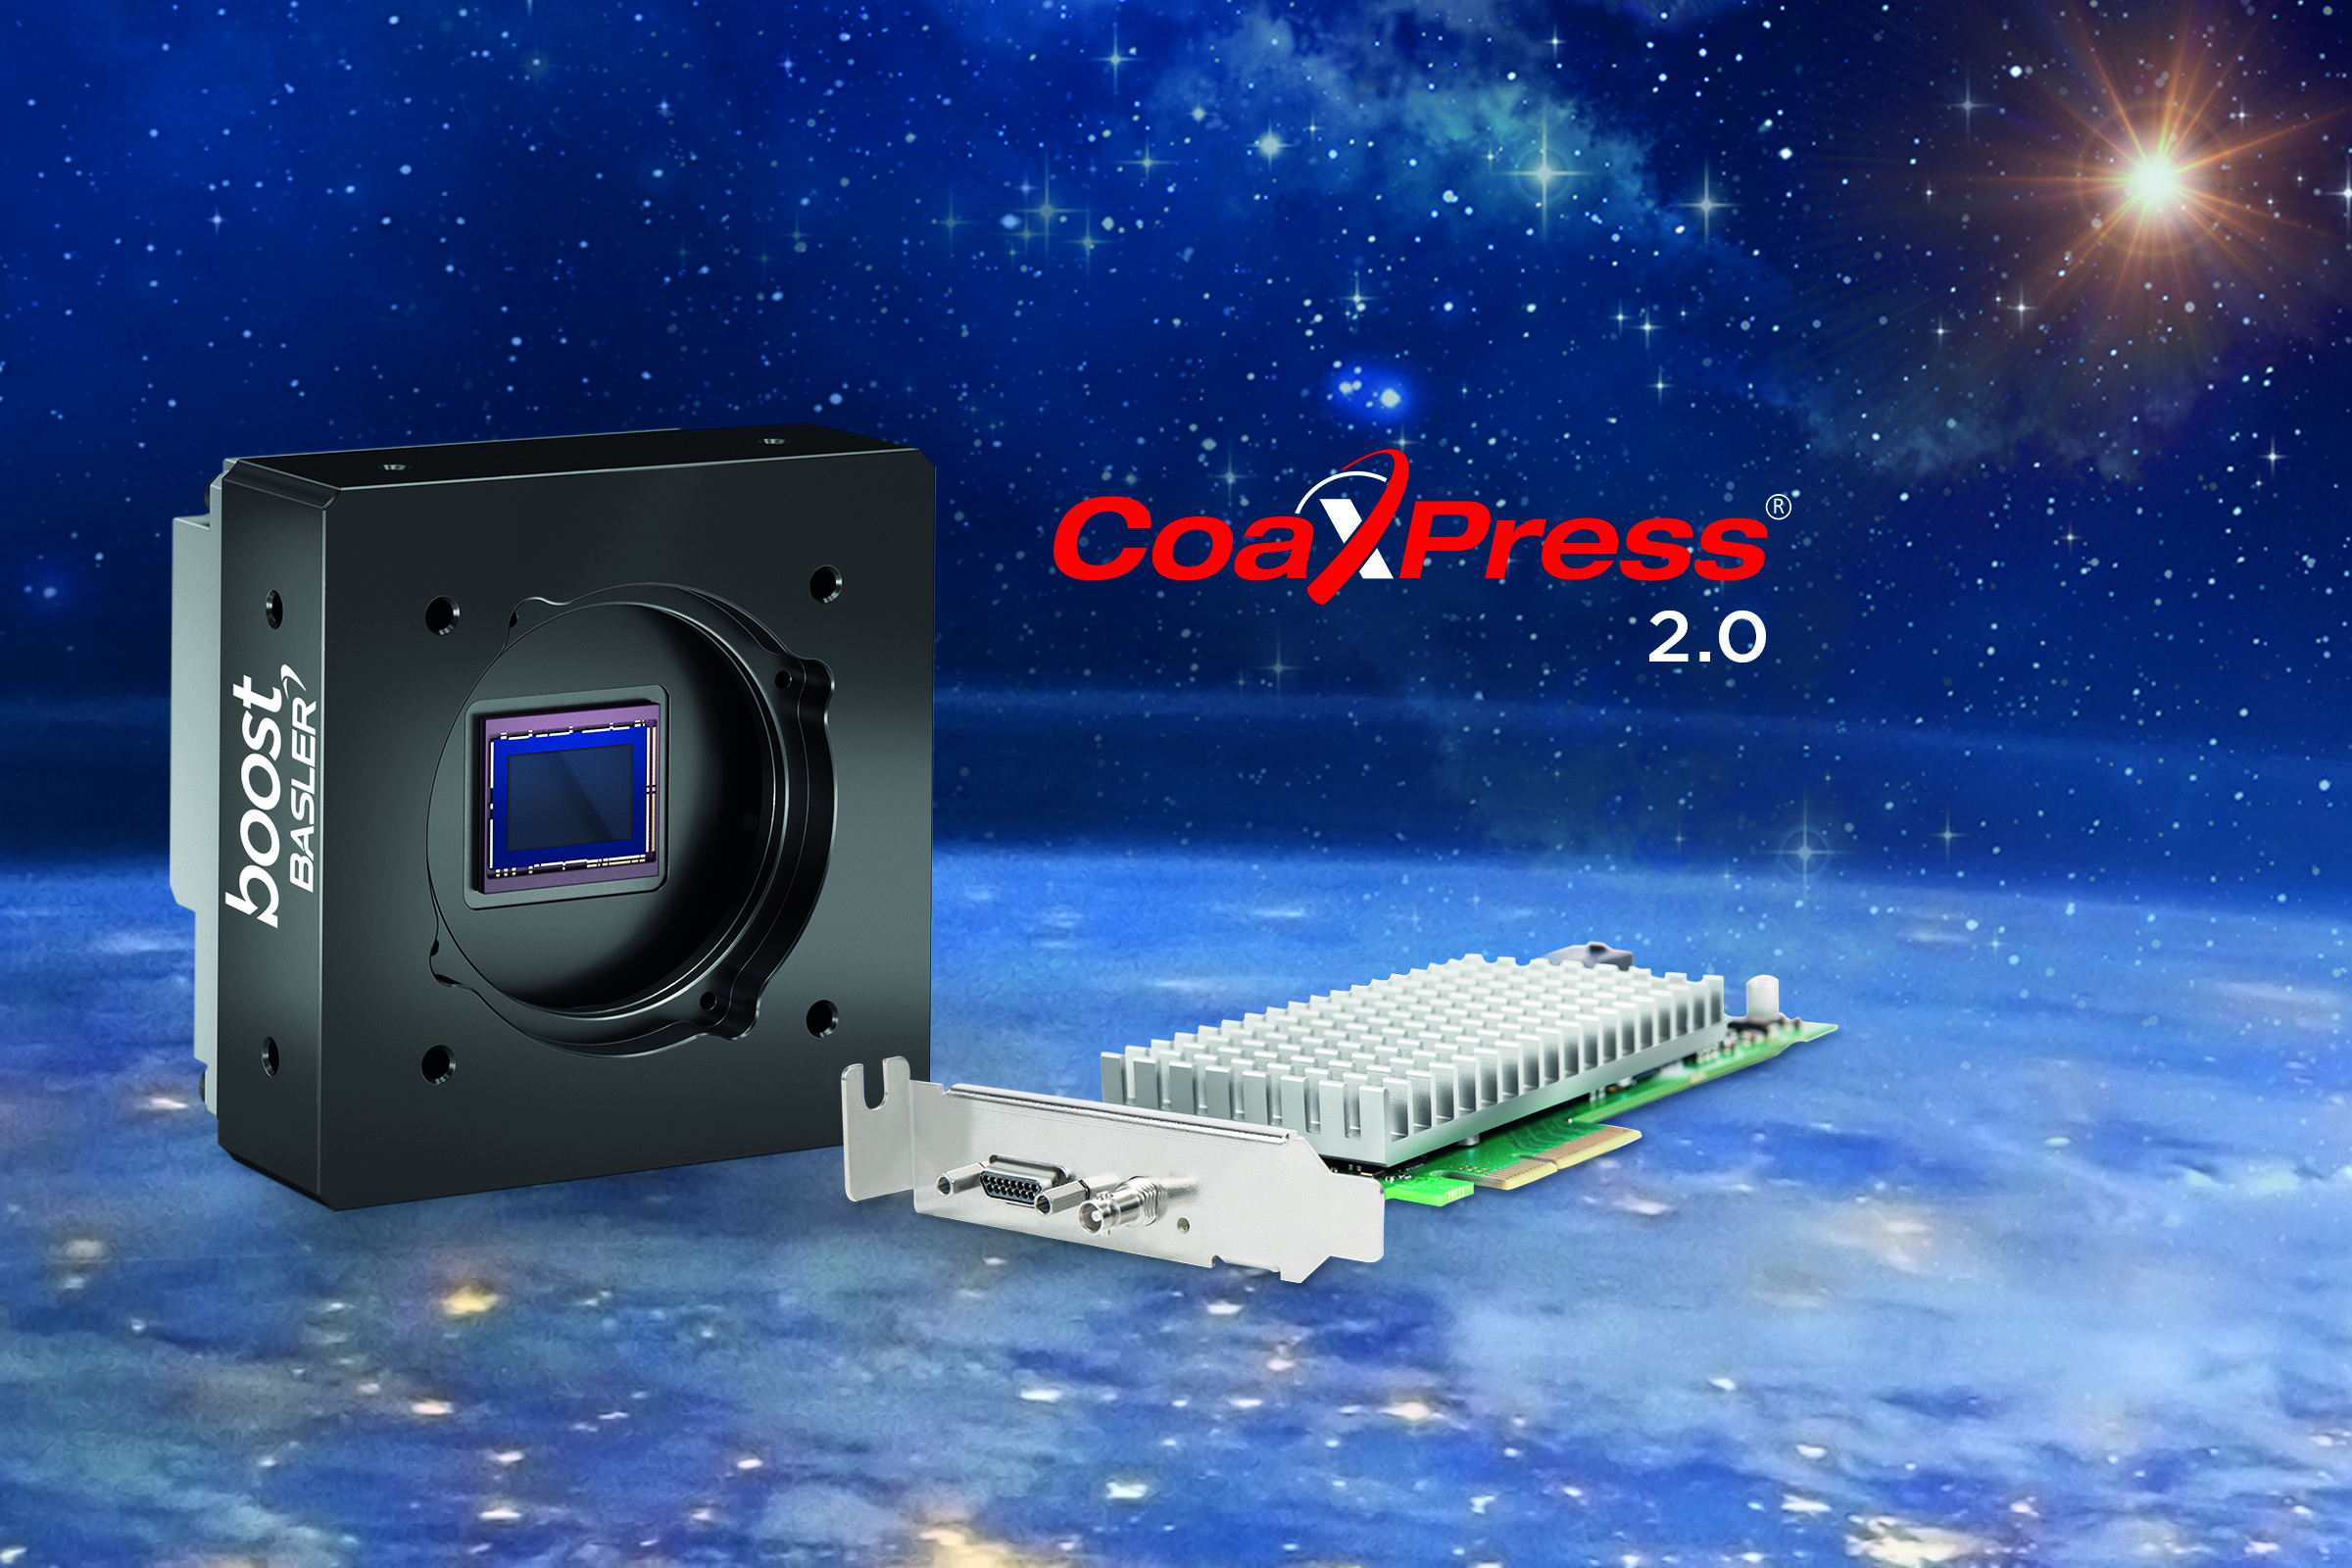 Bild 1 | Basler bietet neben der CXP-2.0-Kamera Boost zudem die eigens designte CXP-12-Schnittstellenkarte an. Kombiniert mit der Kamera bilden beide das Basler Boost Bundle. (Bild: Basler AG)